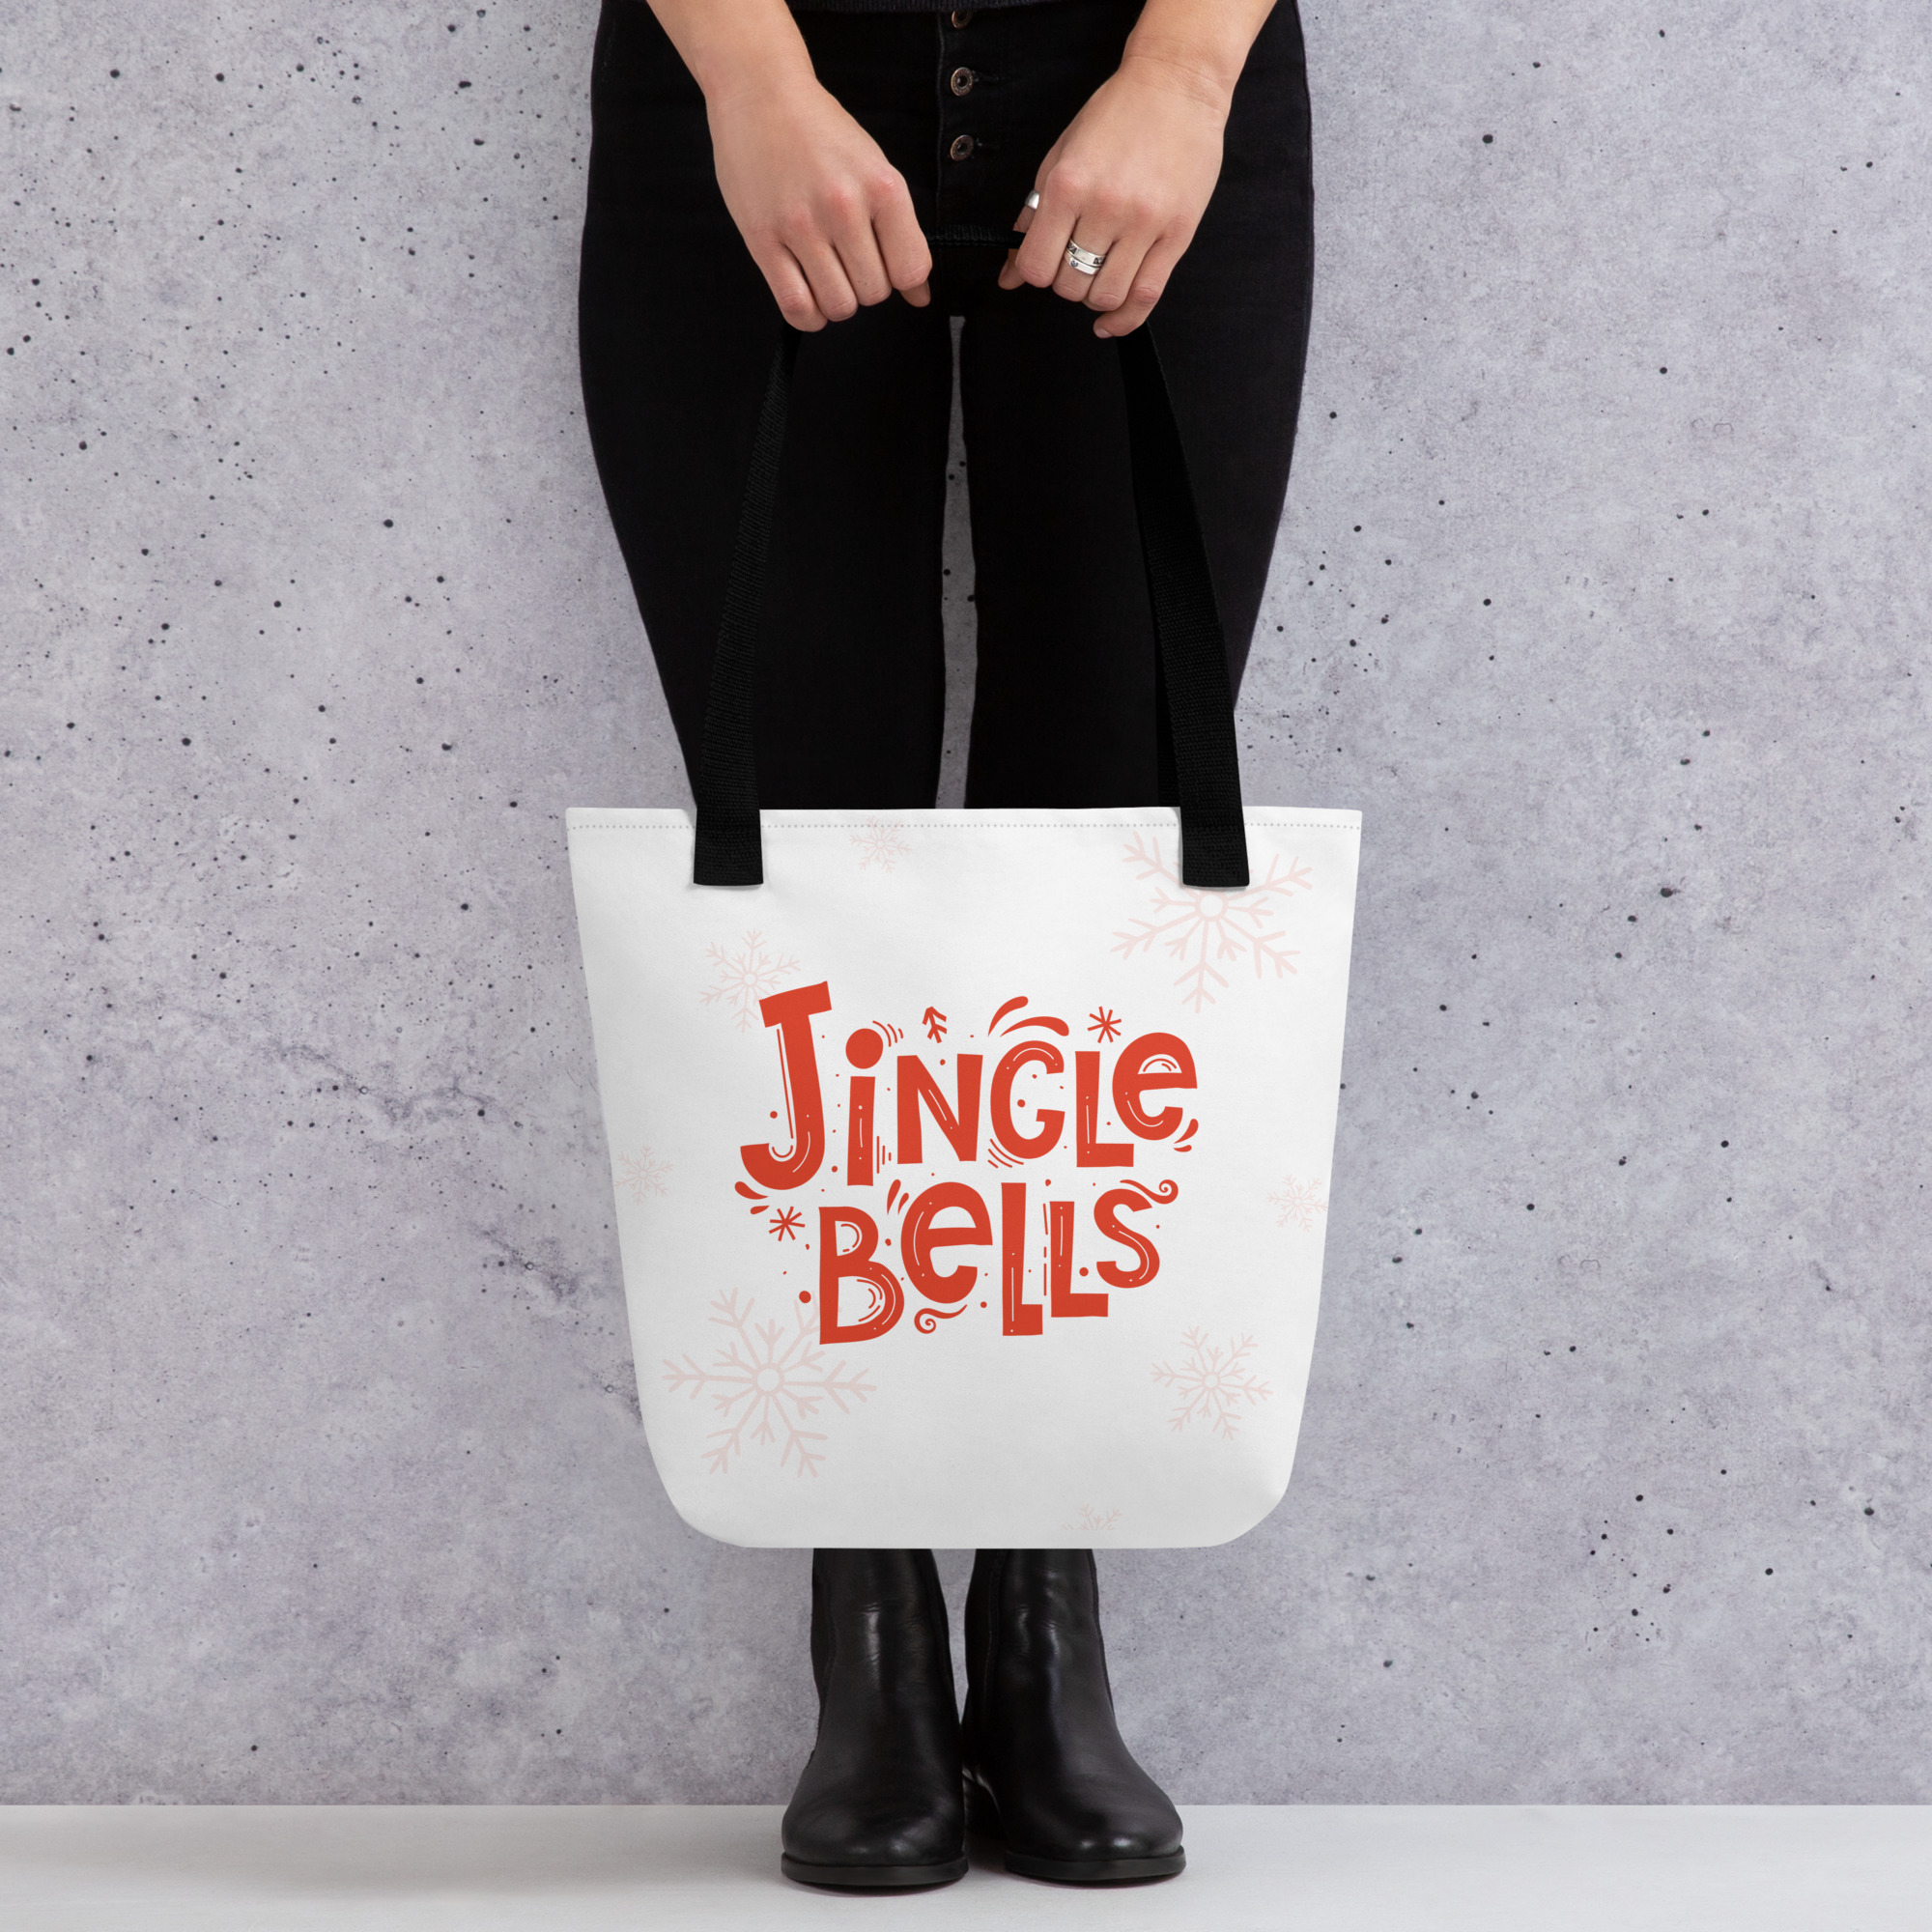 "jingle bells" tote bag